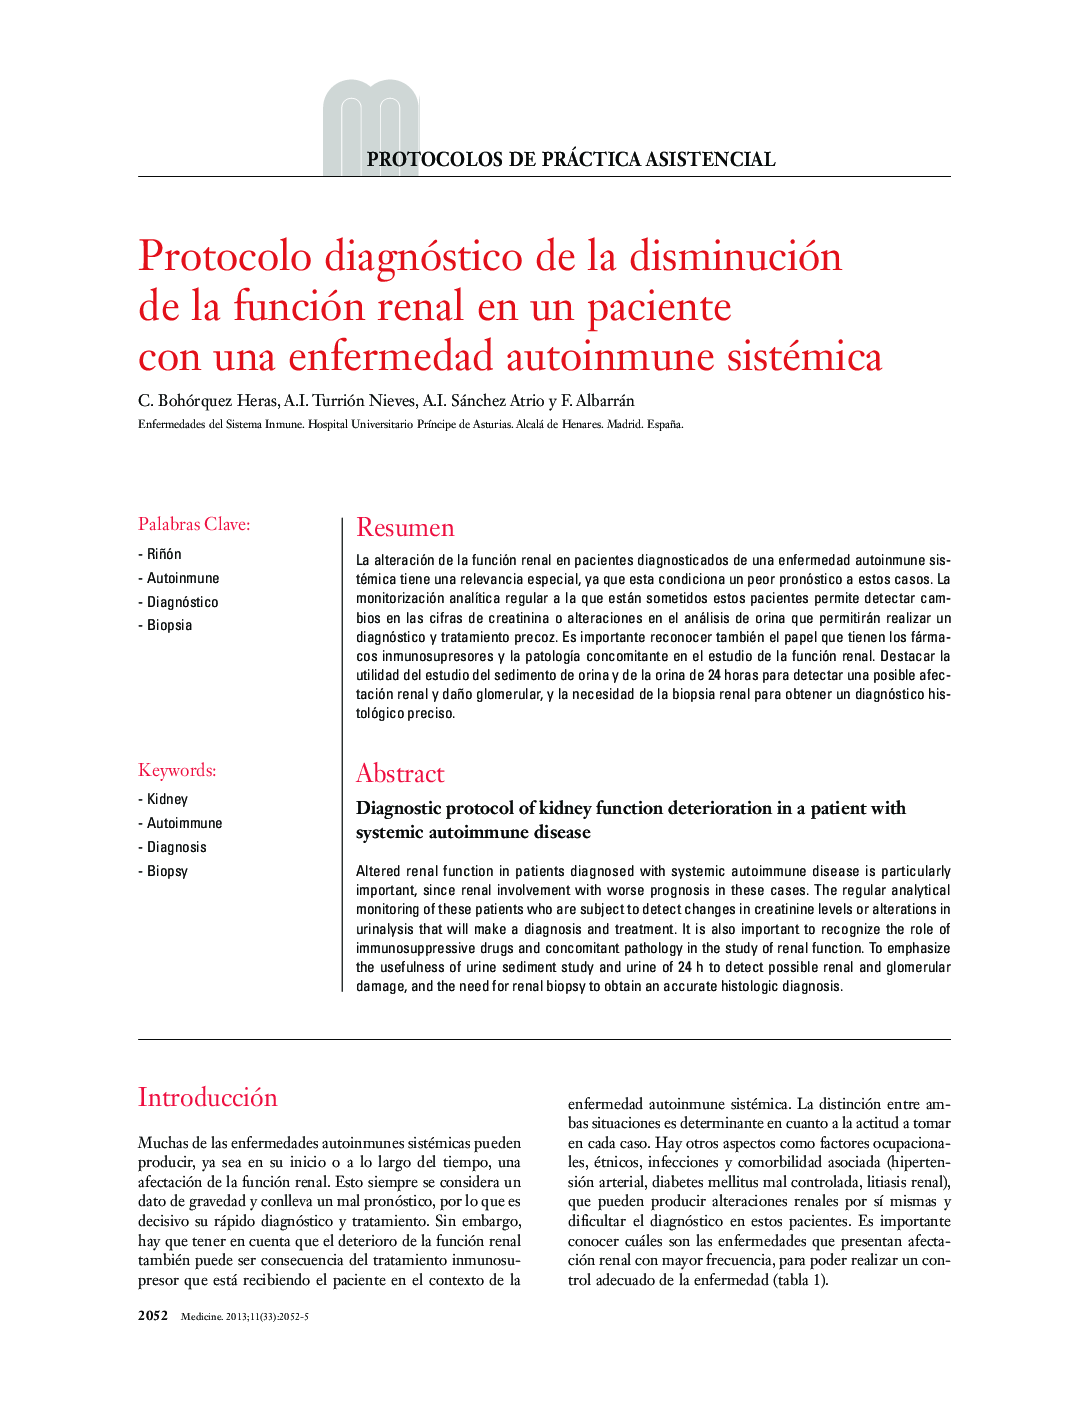 Protocolo diagnóstico de la disminución de la función renal en un paciente con una enfermedad autoinmune sistémica